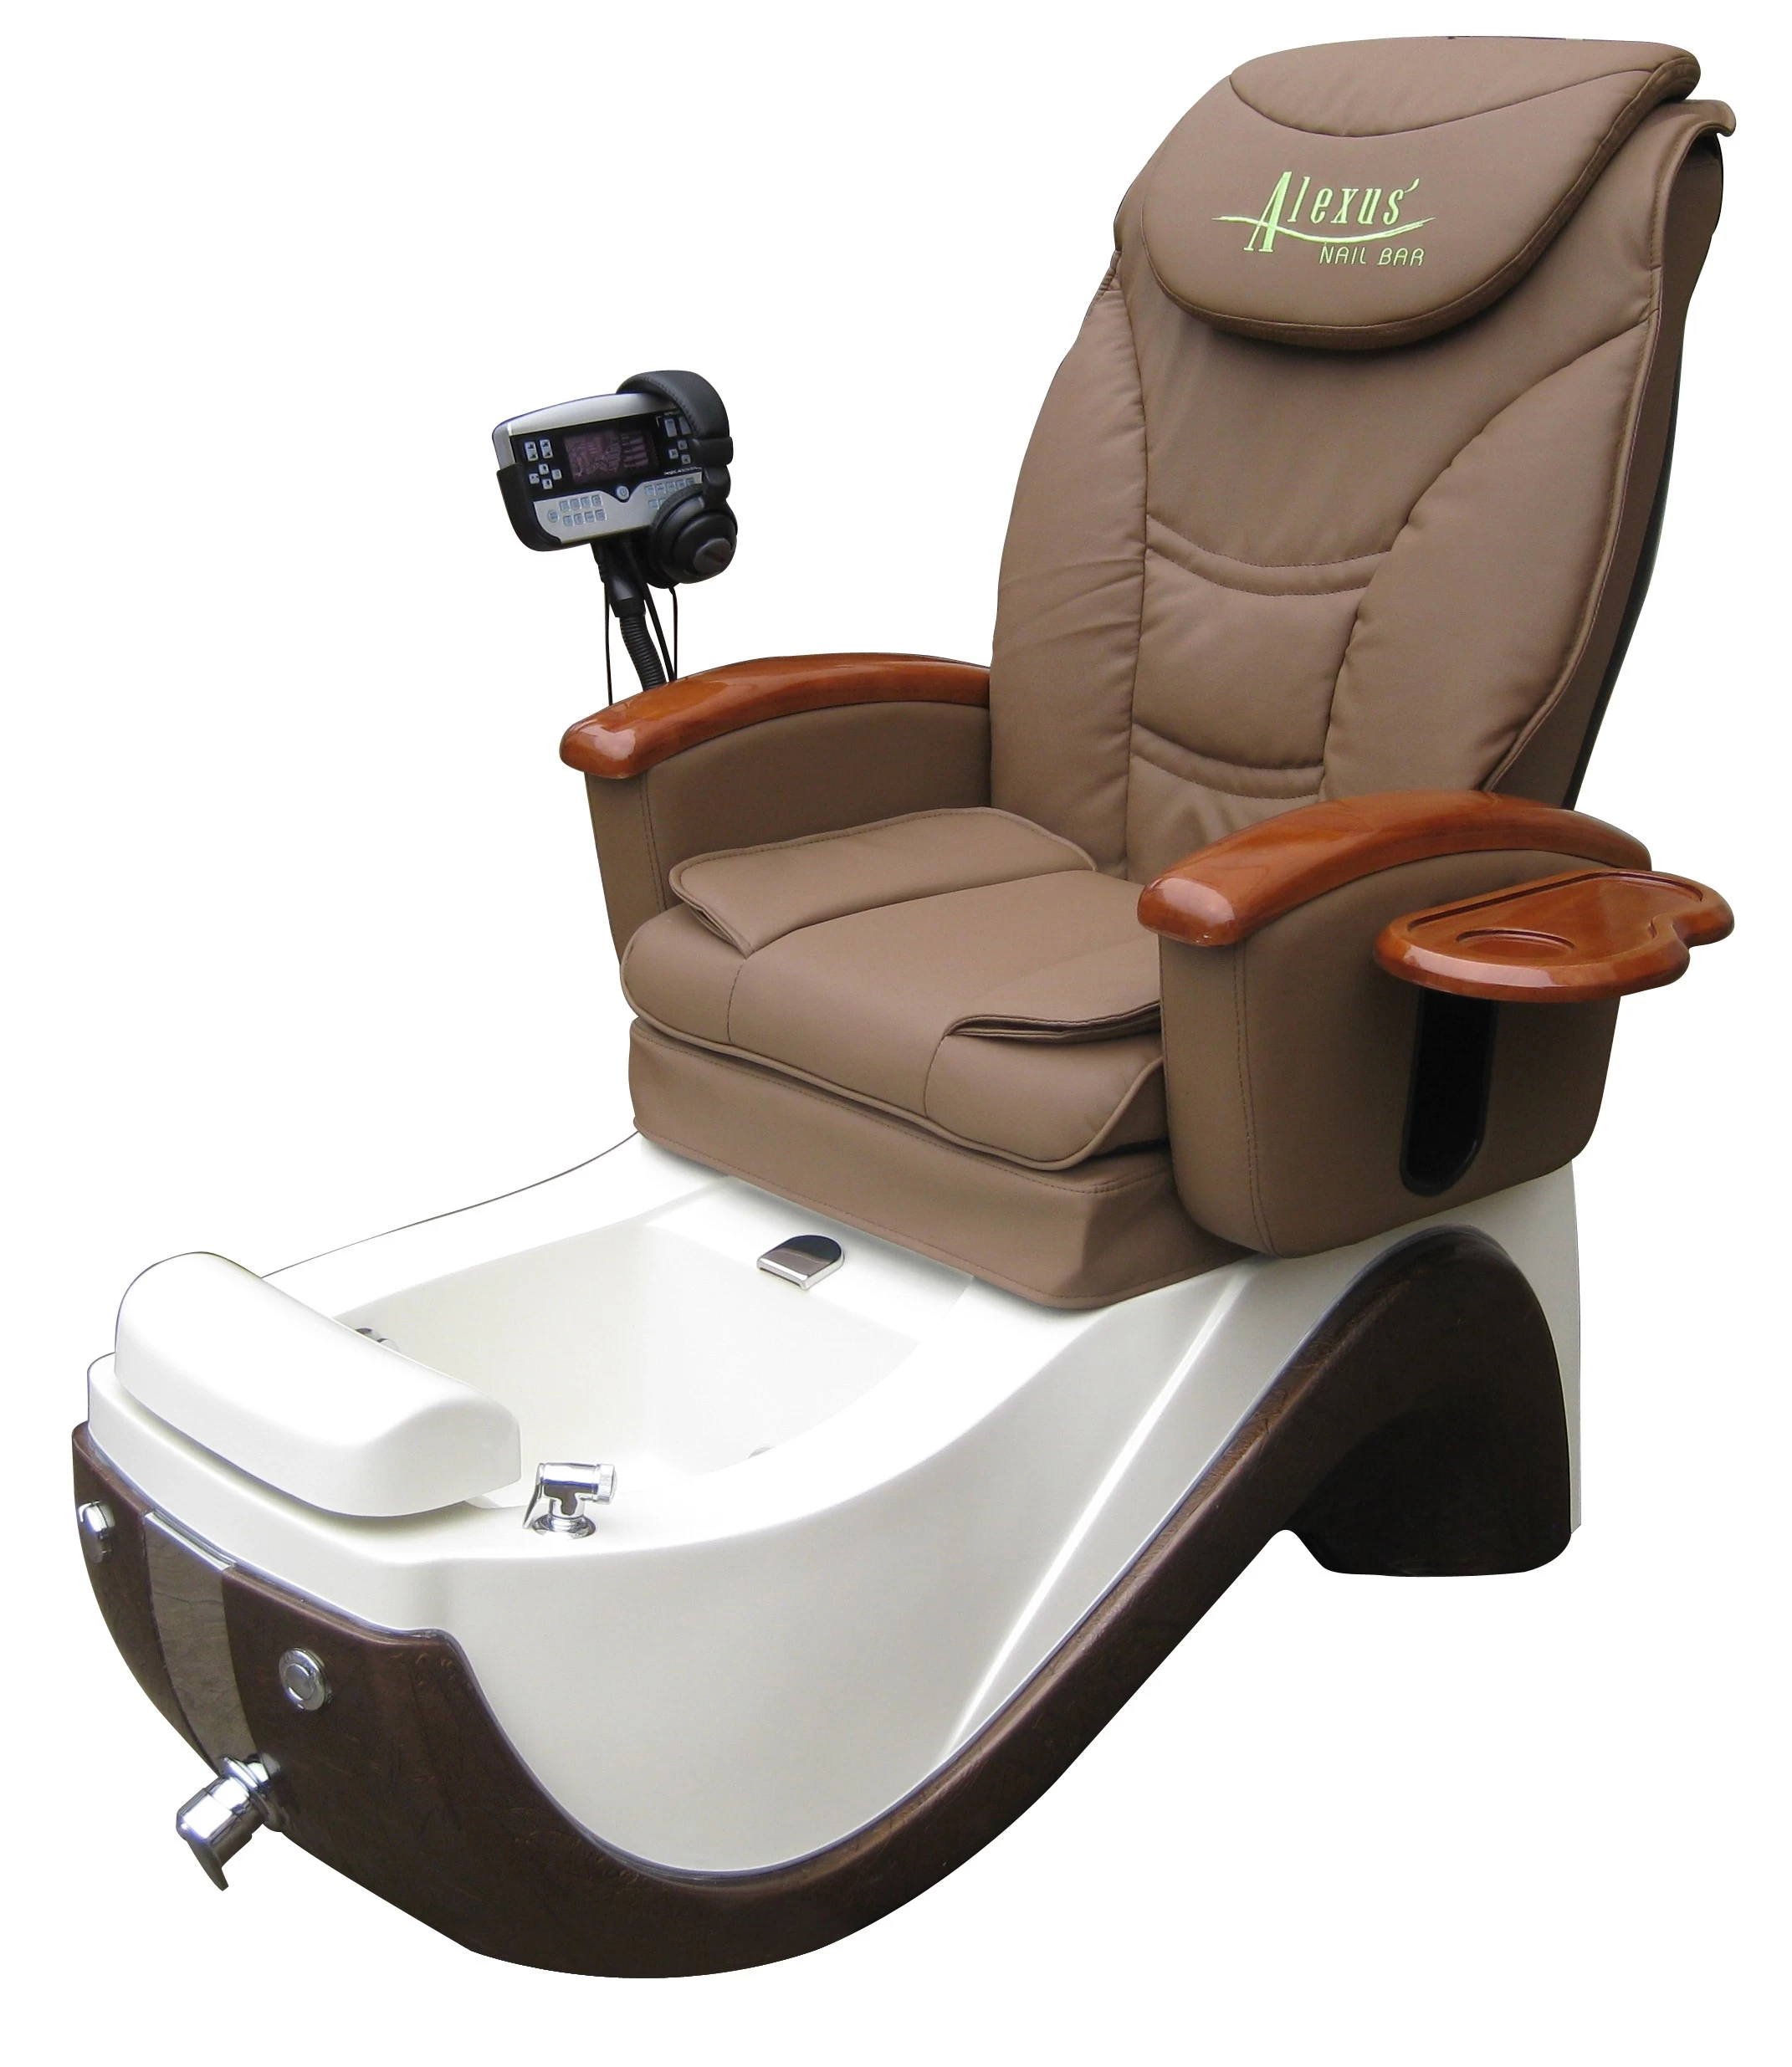 Cheap Salon Equipment Spa Joy Pedicure Chair Durable Spa Massage Pedicure Chair